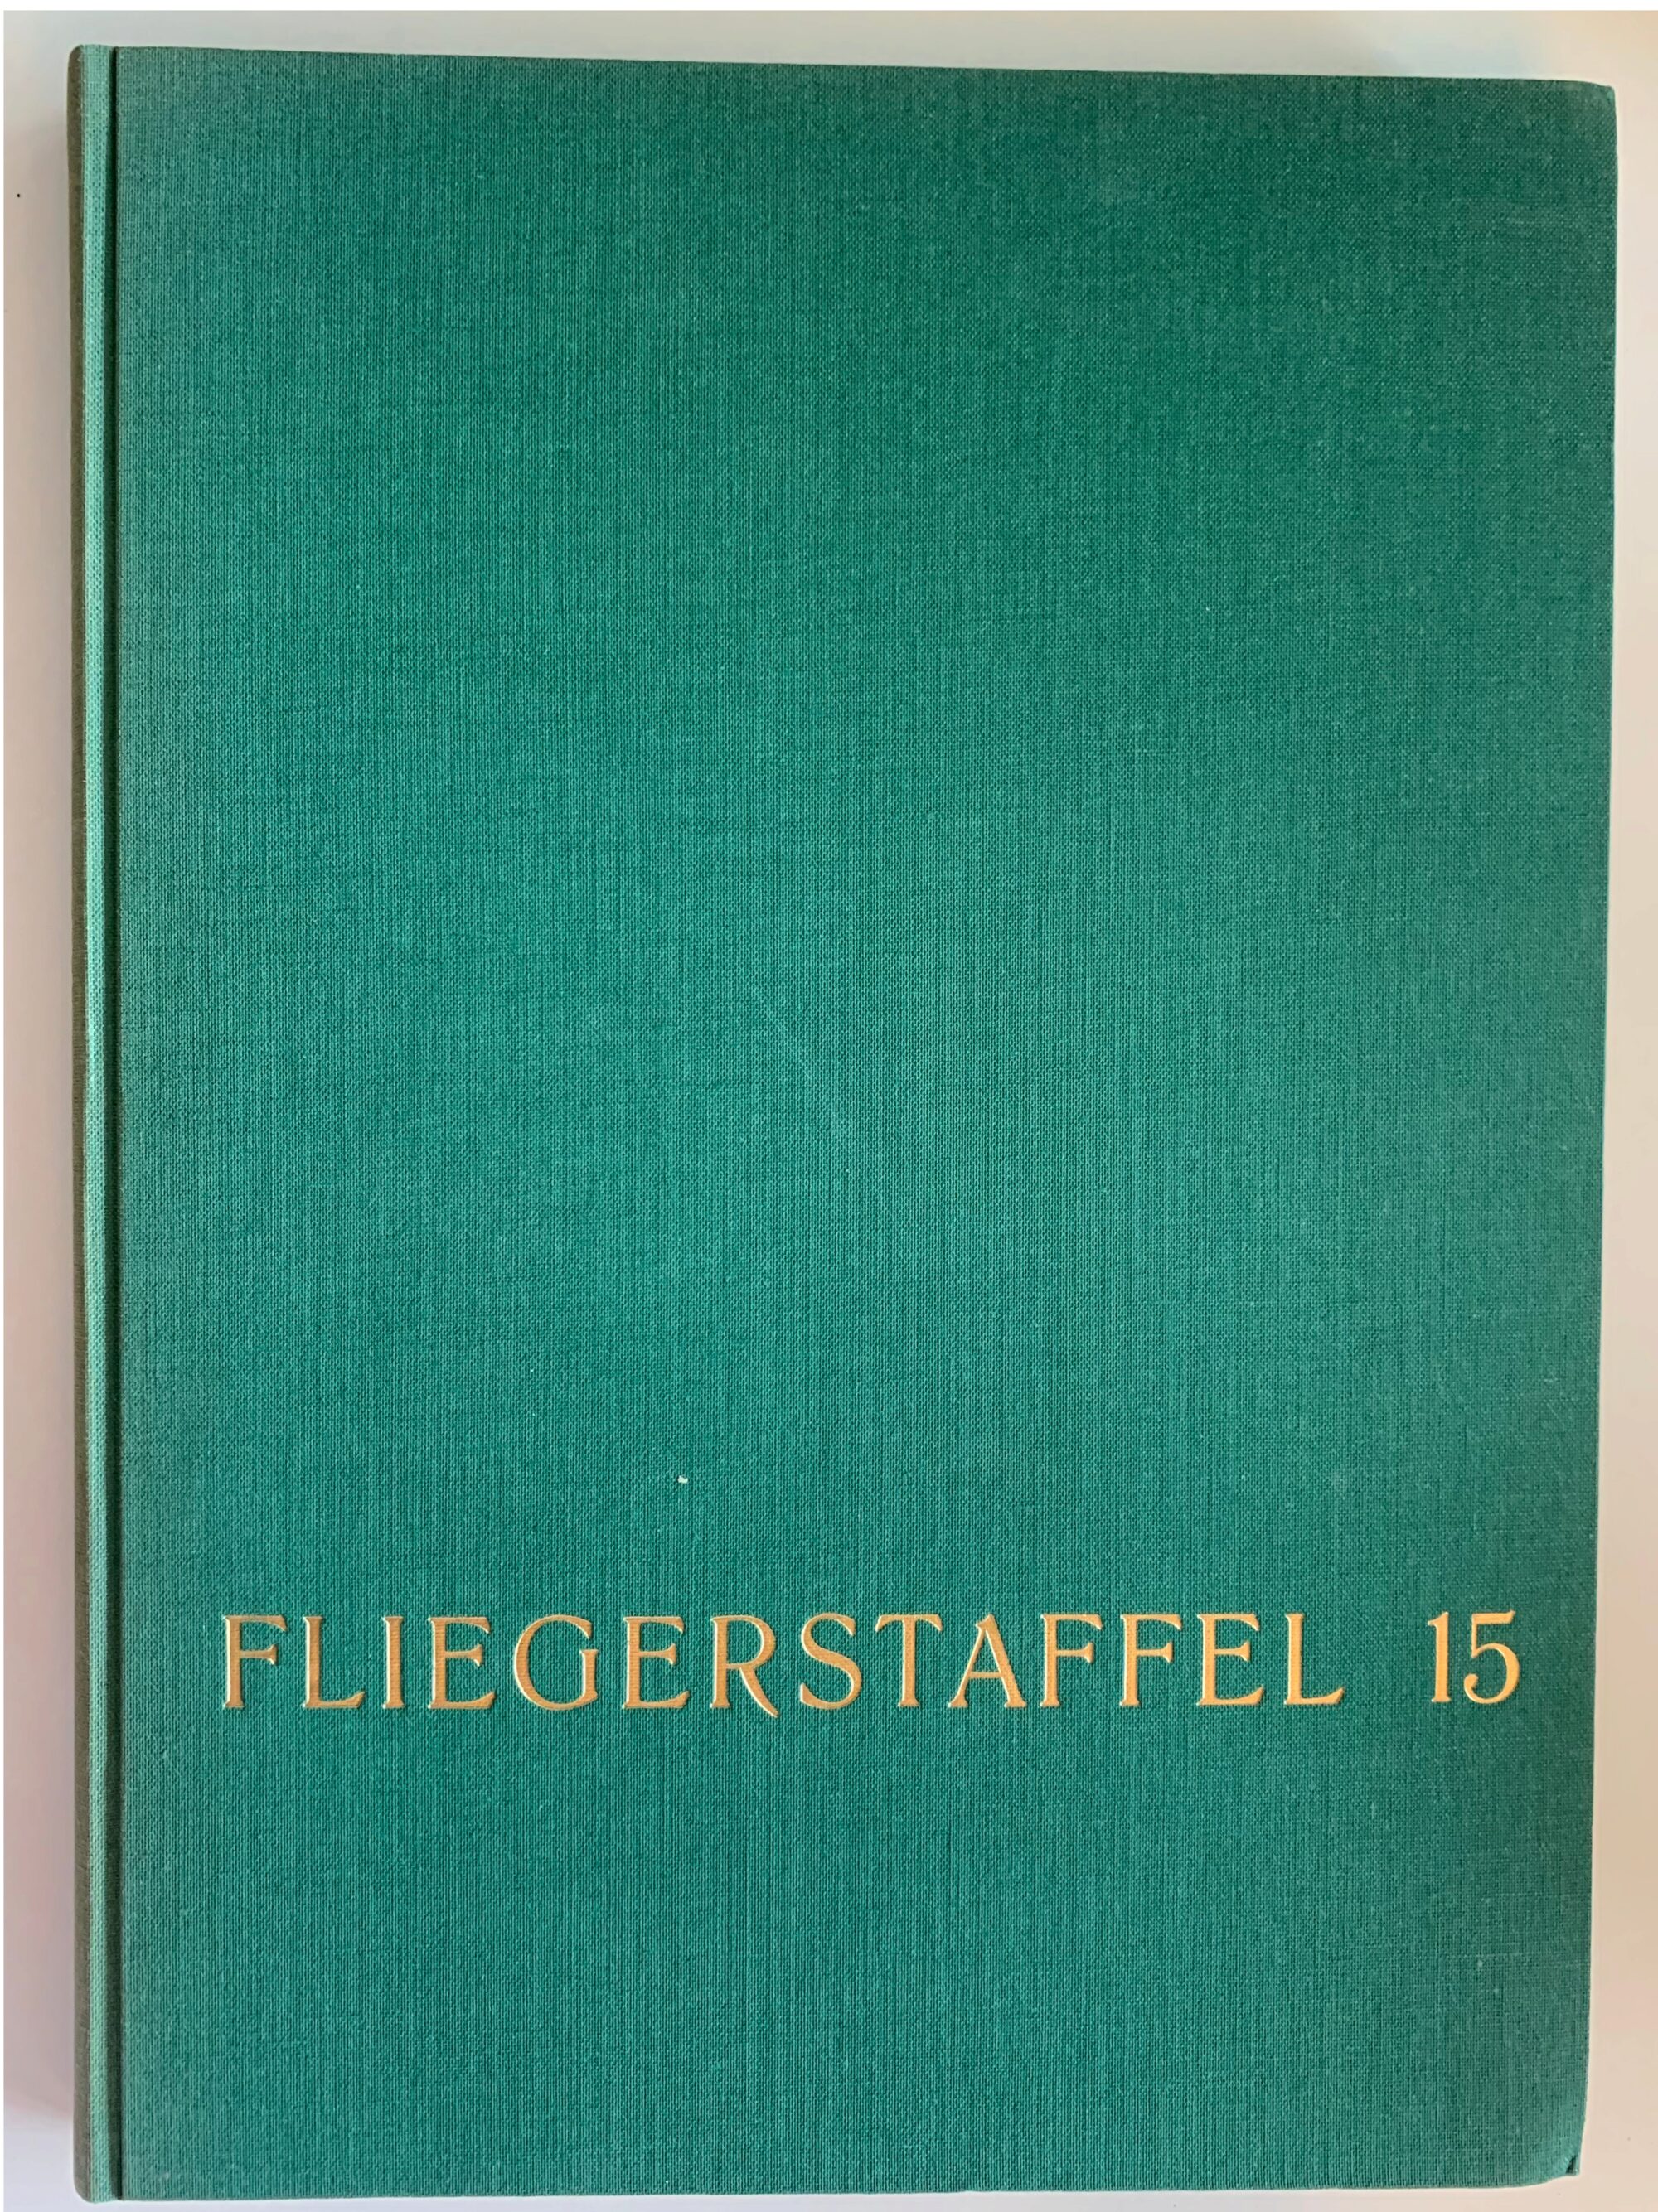 Buch B-333 *Fliegerstaffel 15 - Die Geschichte einer Fliegerstaffel